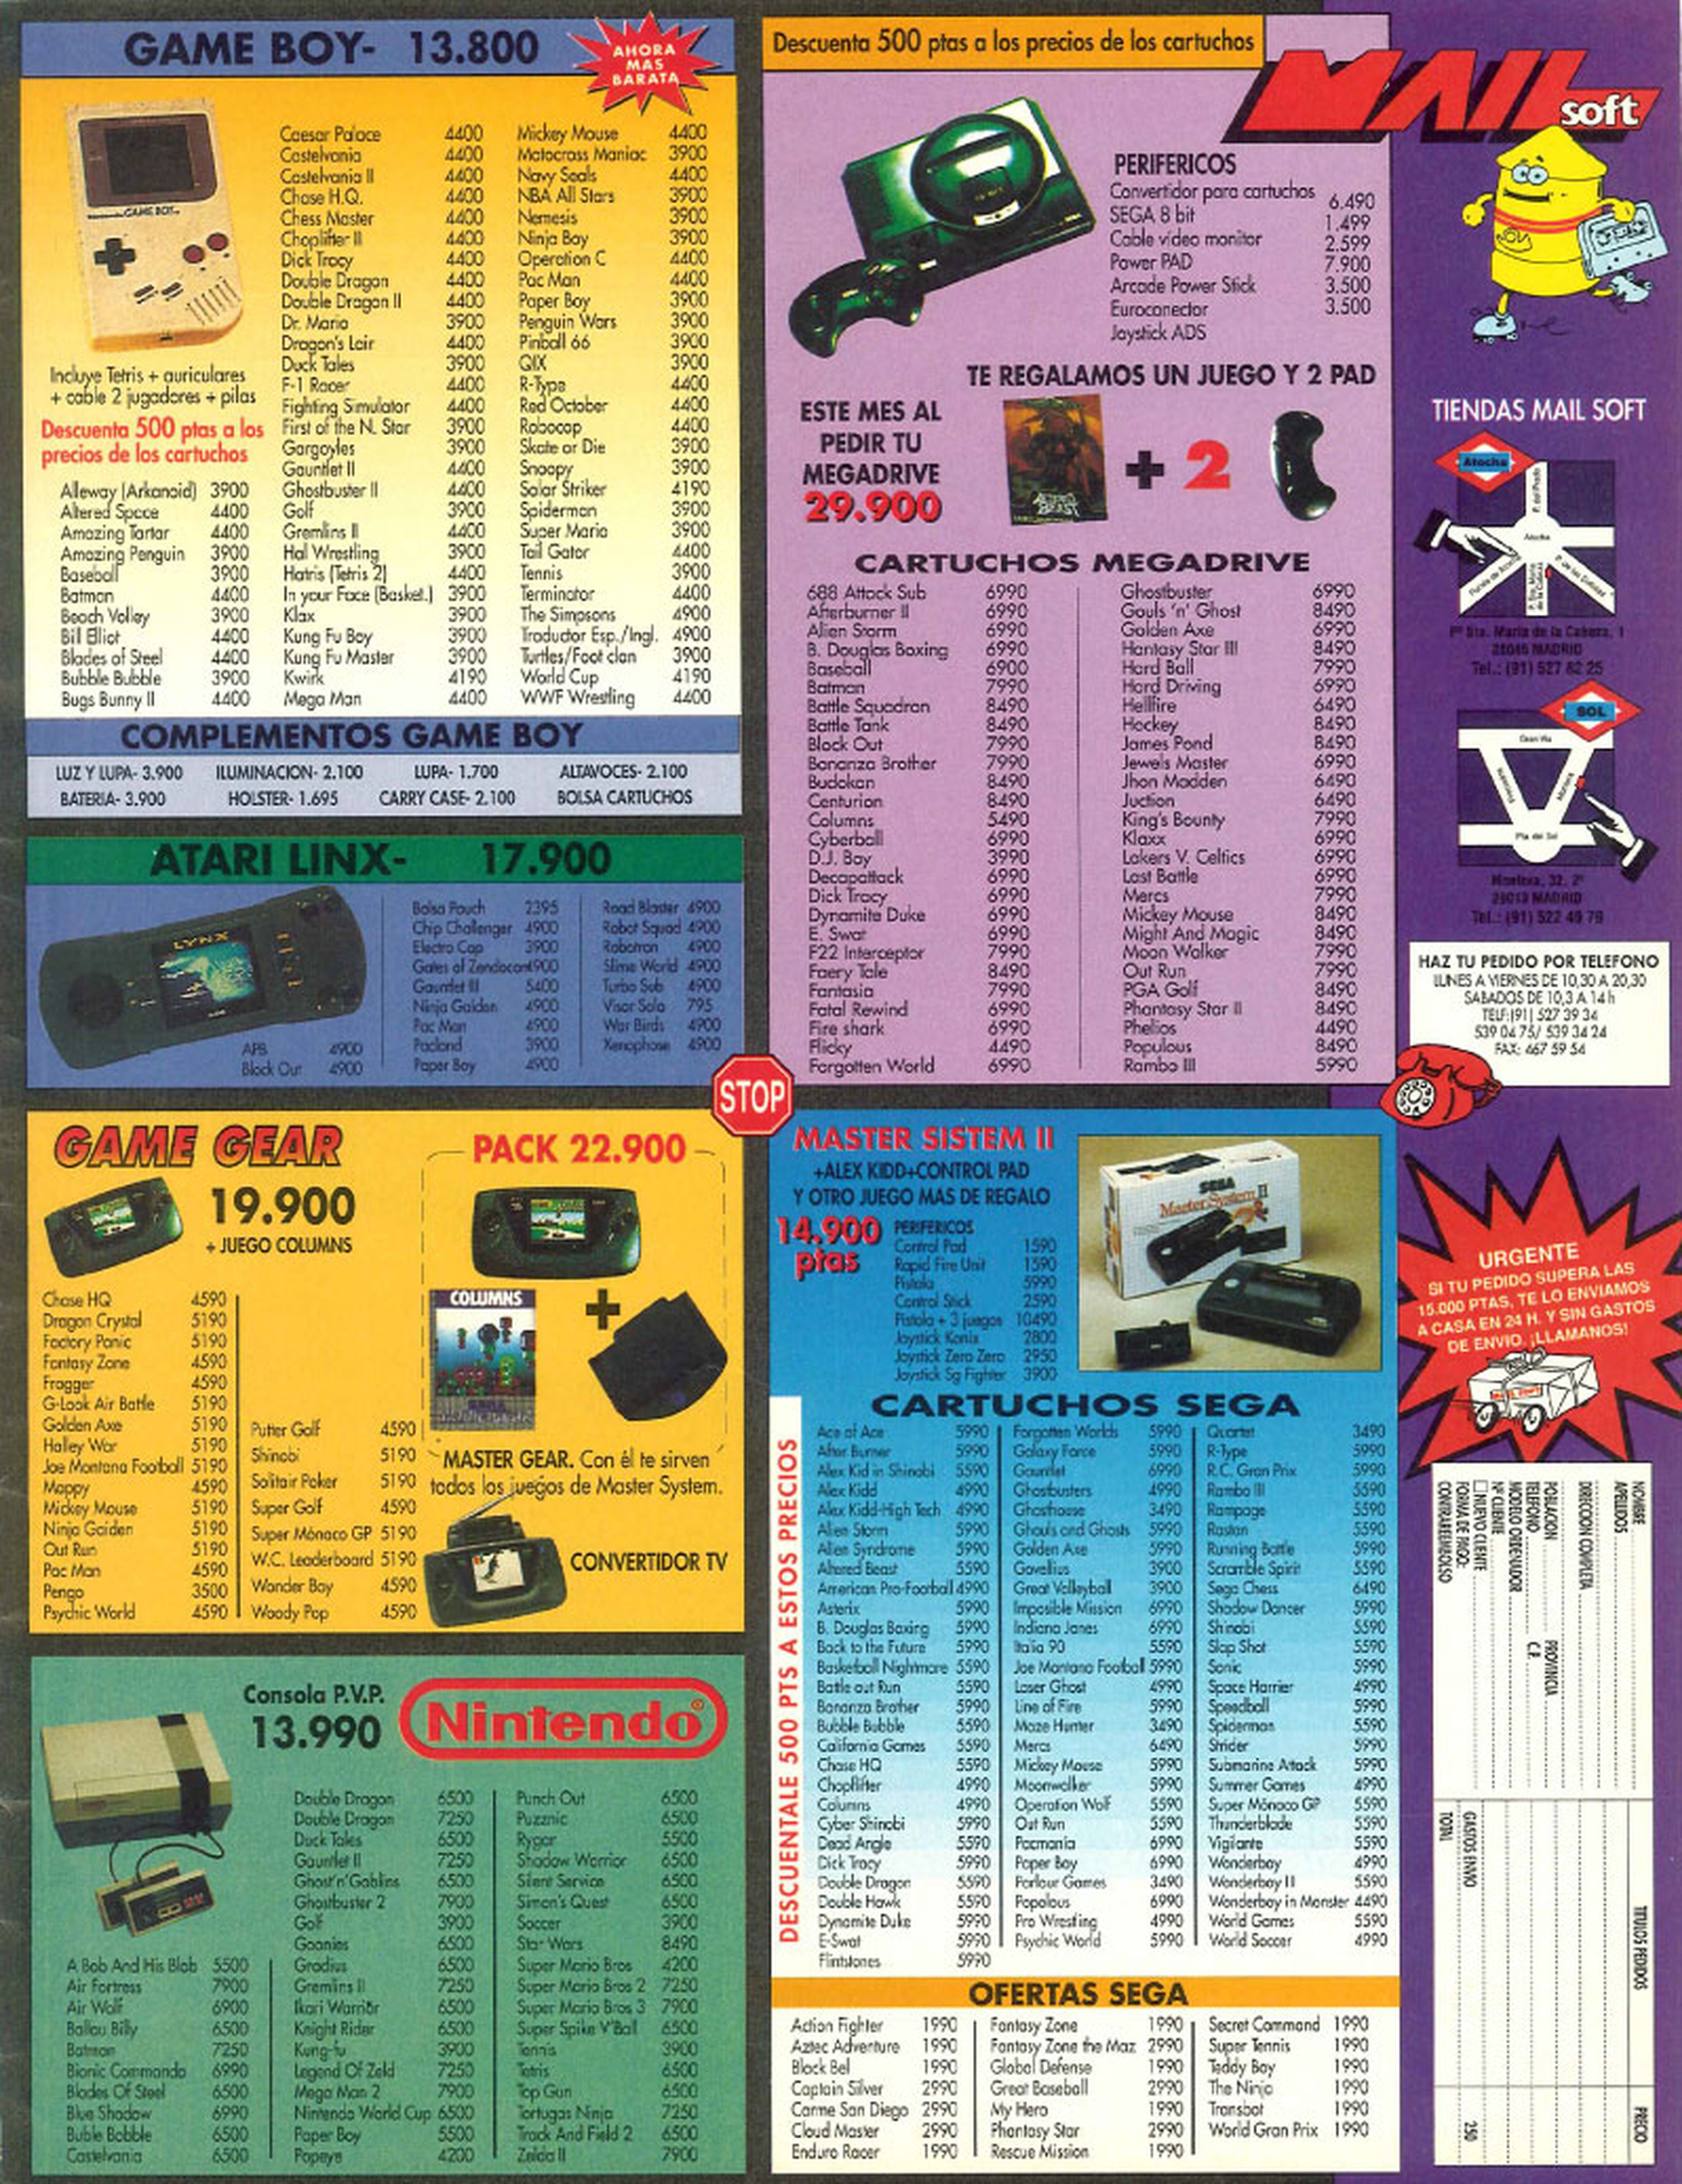 Centro Mail era lo que ahora conocemos como GAME y desde el principio de los videojuegos han estado ahí. Míticas son sus páginas de publicidad de los primeros años, donde nos dejábamos los ojitos para buscar el juego que deseábamos...